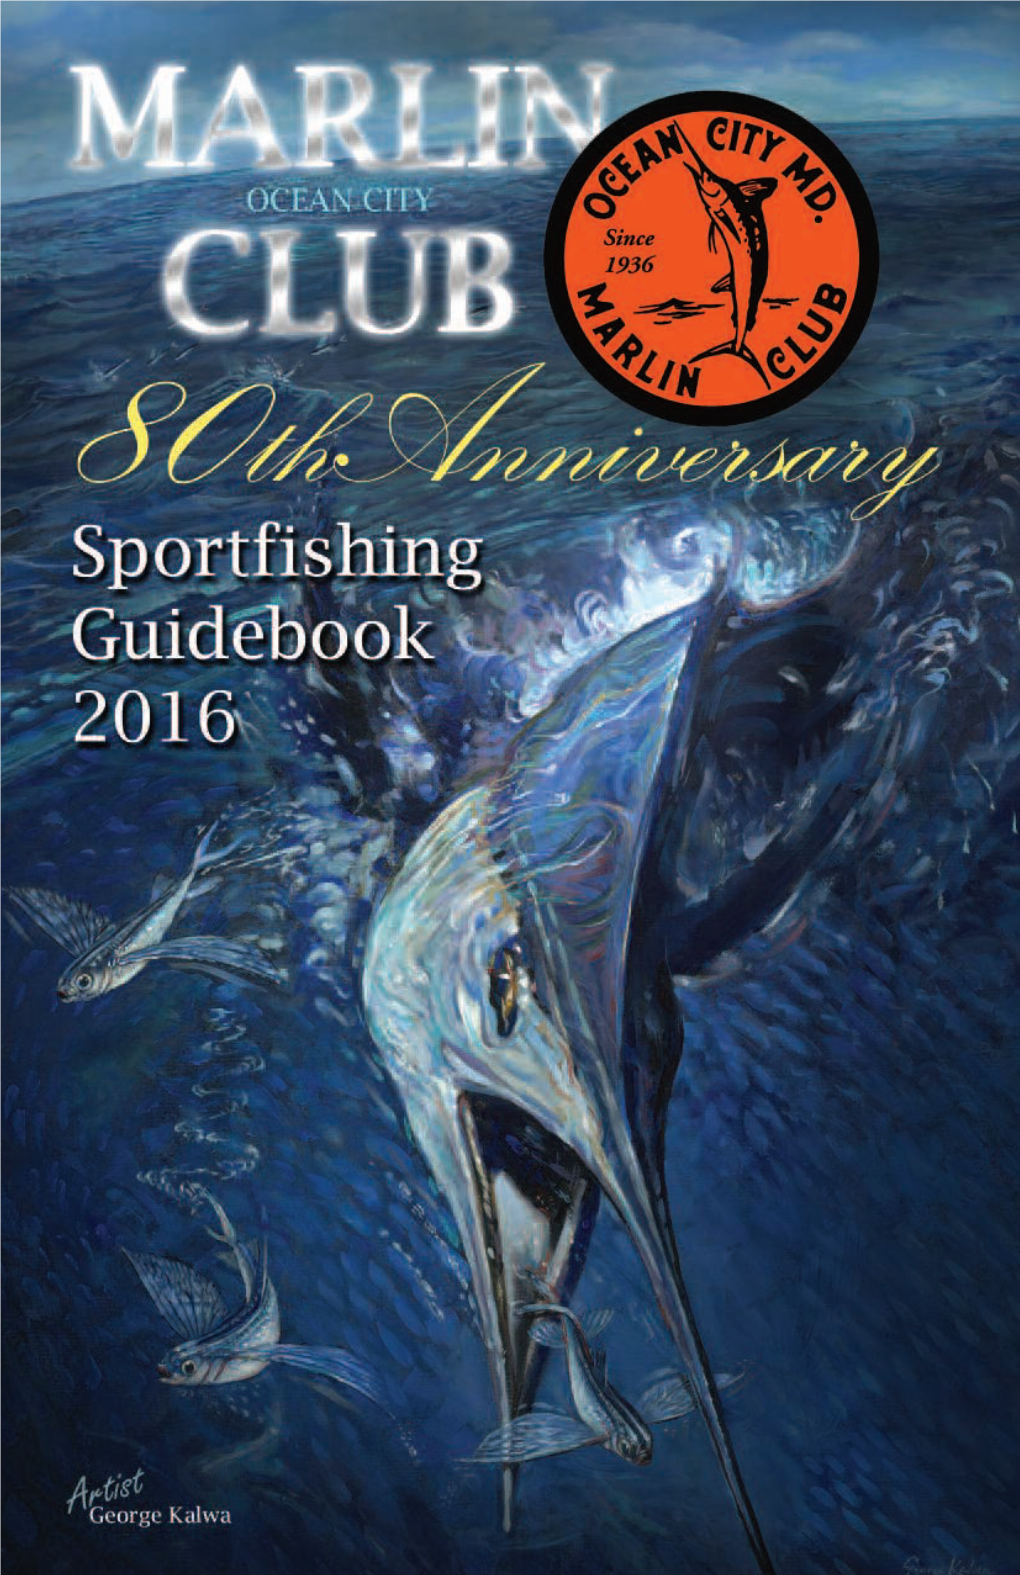 2016 Guide Book